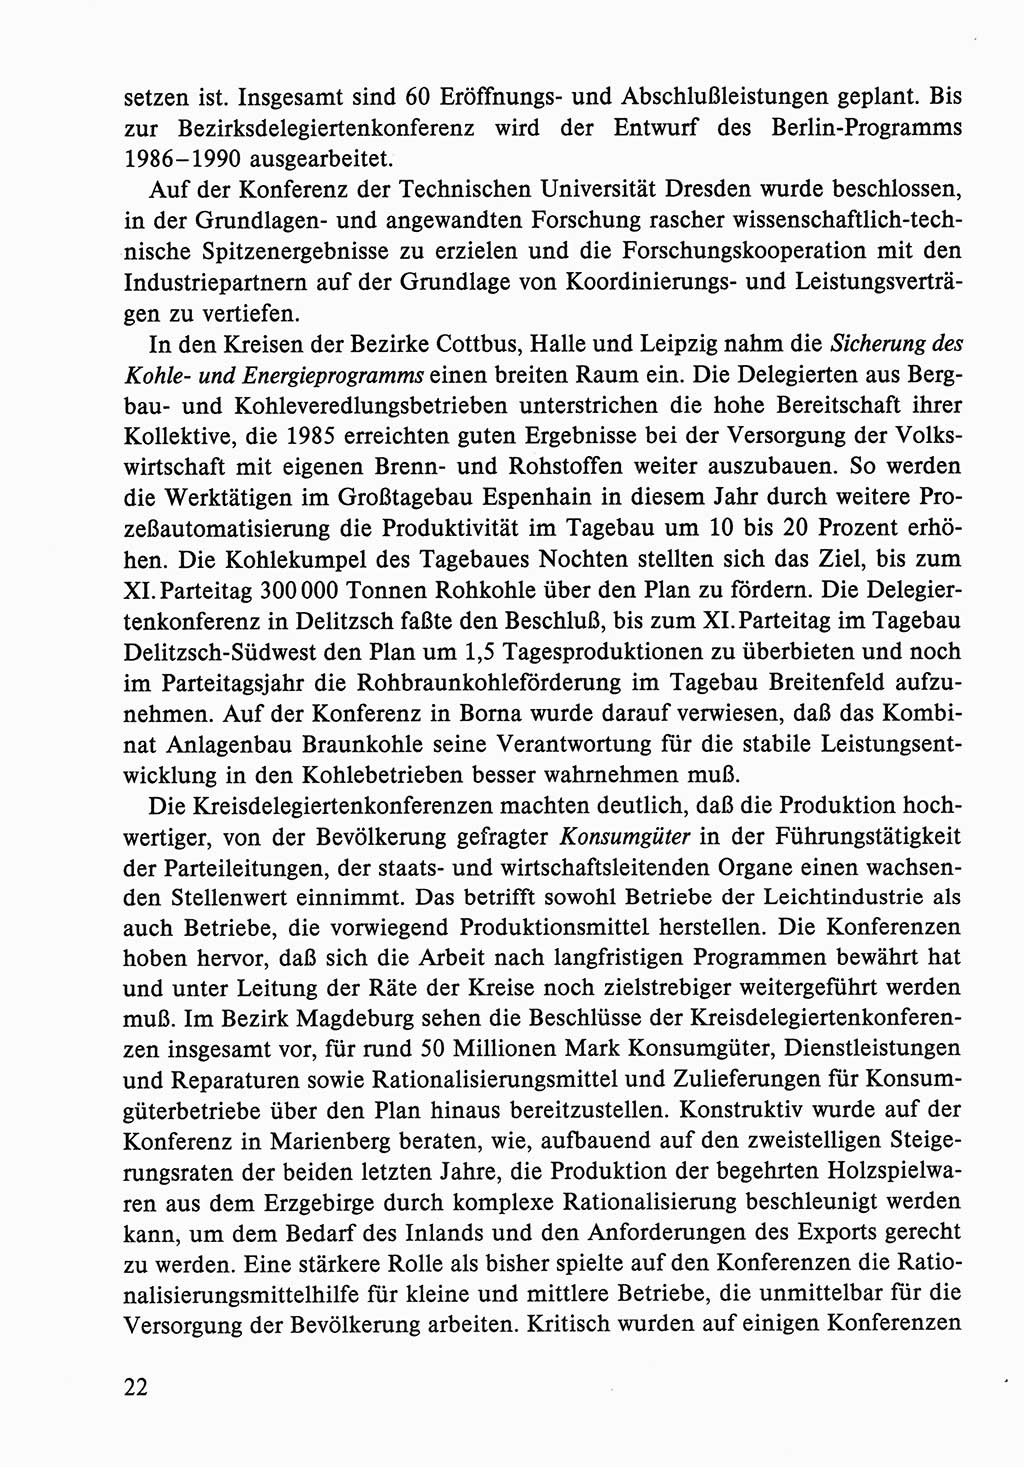 Dokumente der Sozialistischen Einheitspartei Deutschlands (SED) [Deutsche Demokratische Republik (DDR)] 1986-1987, Seite 22 (Dok. SED DDR 1986-1987, S. 22)